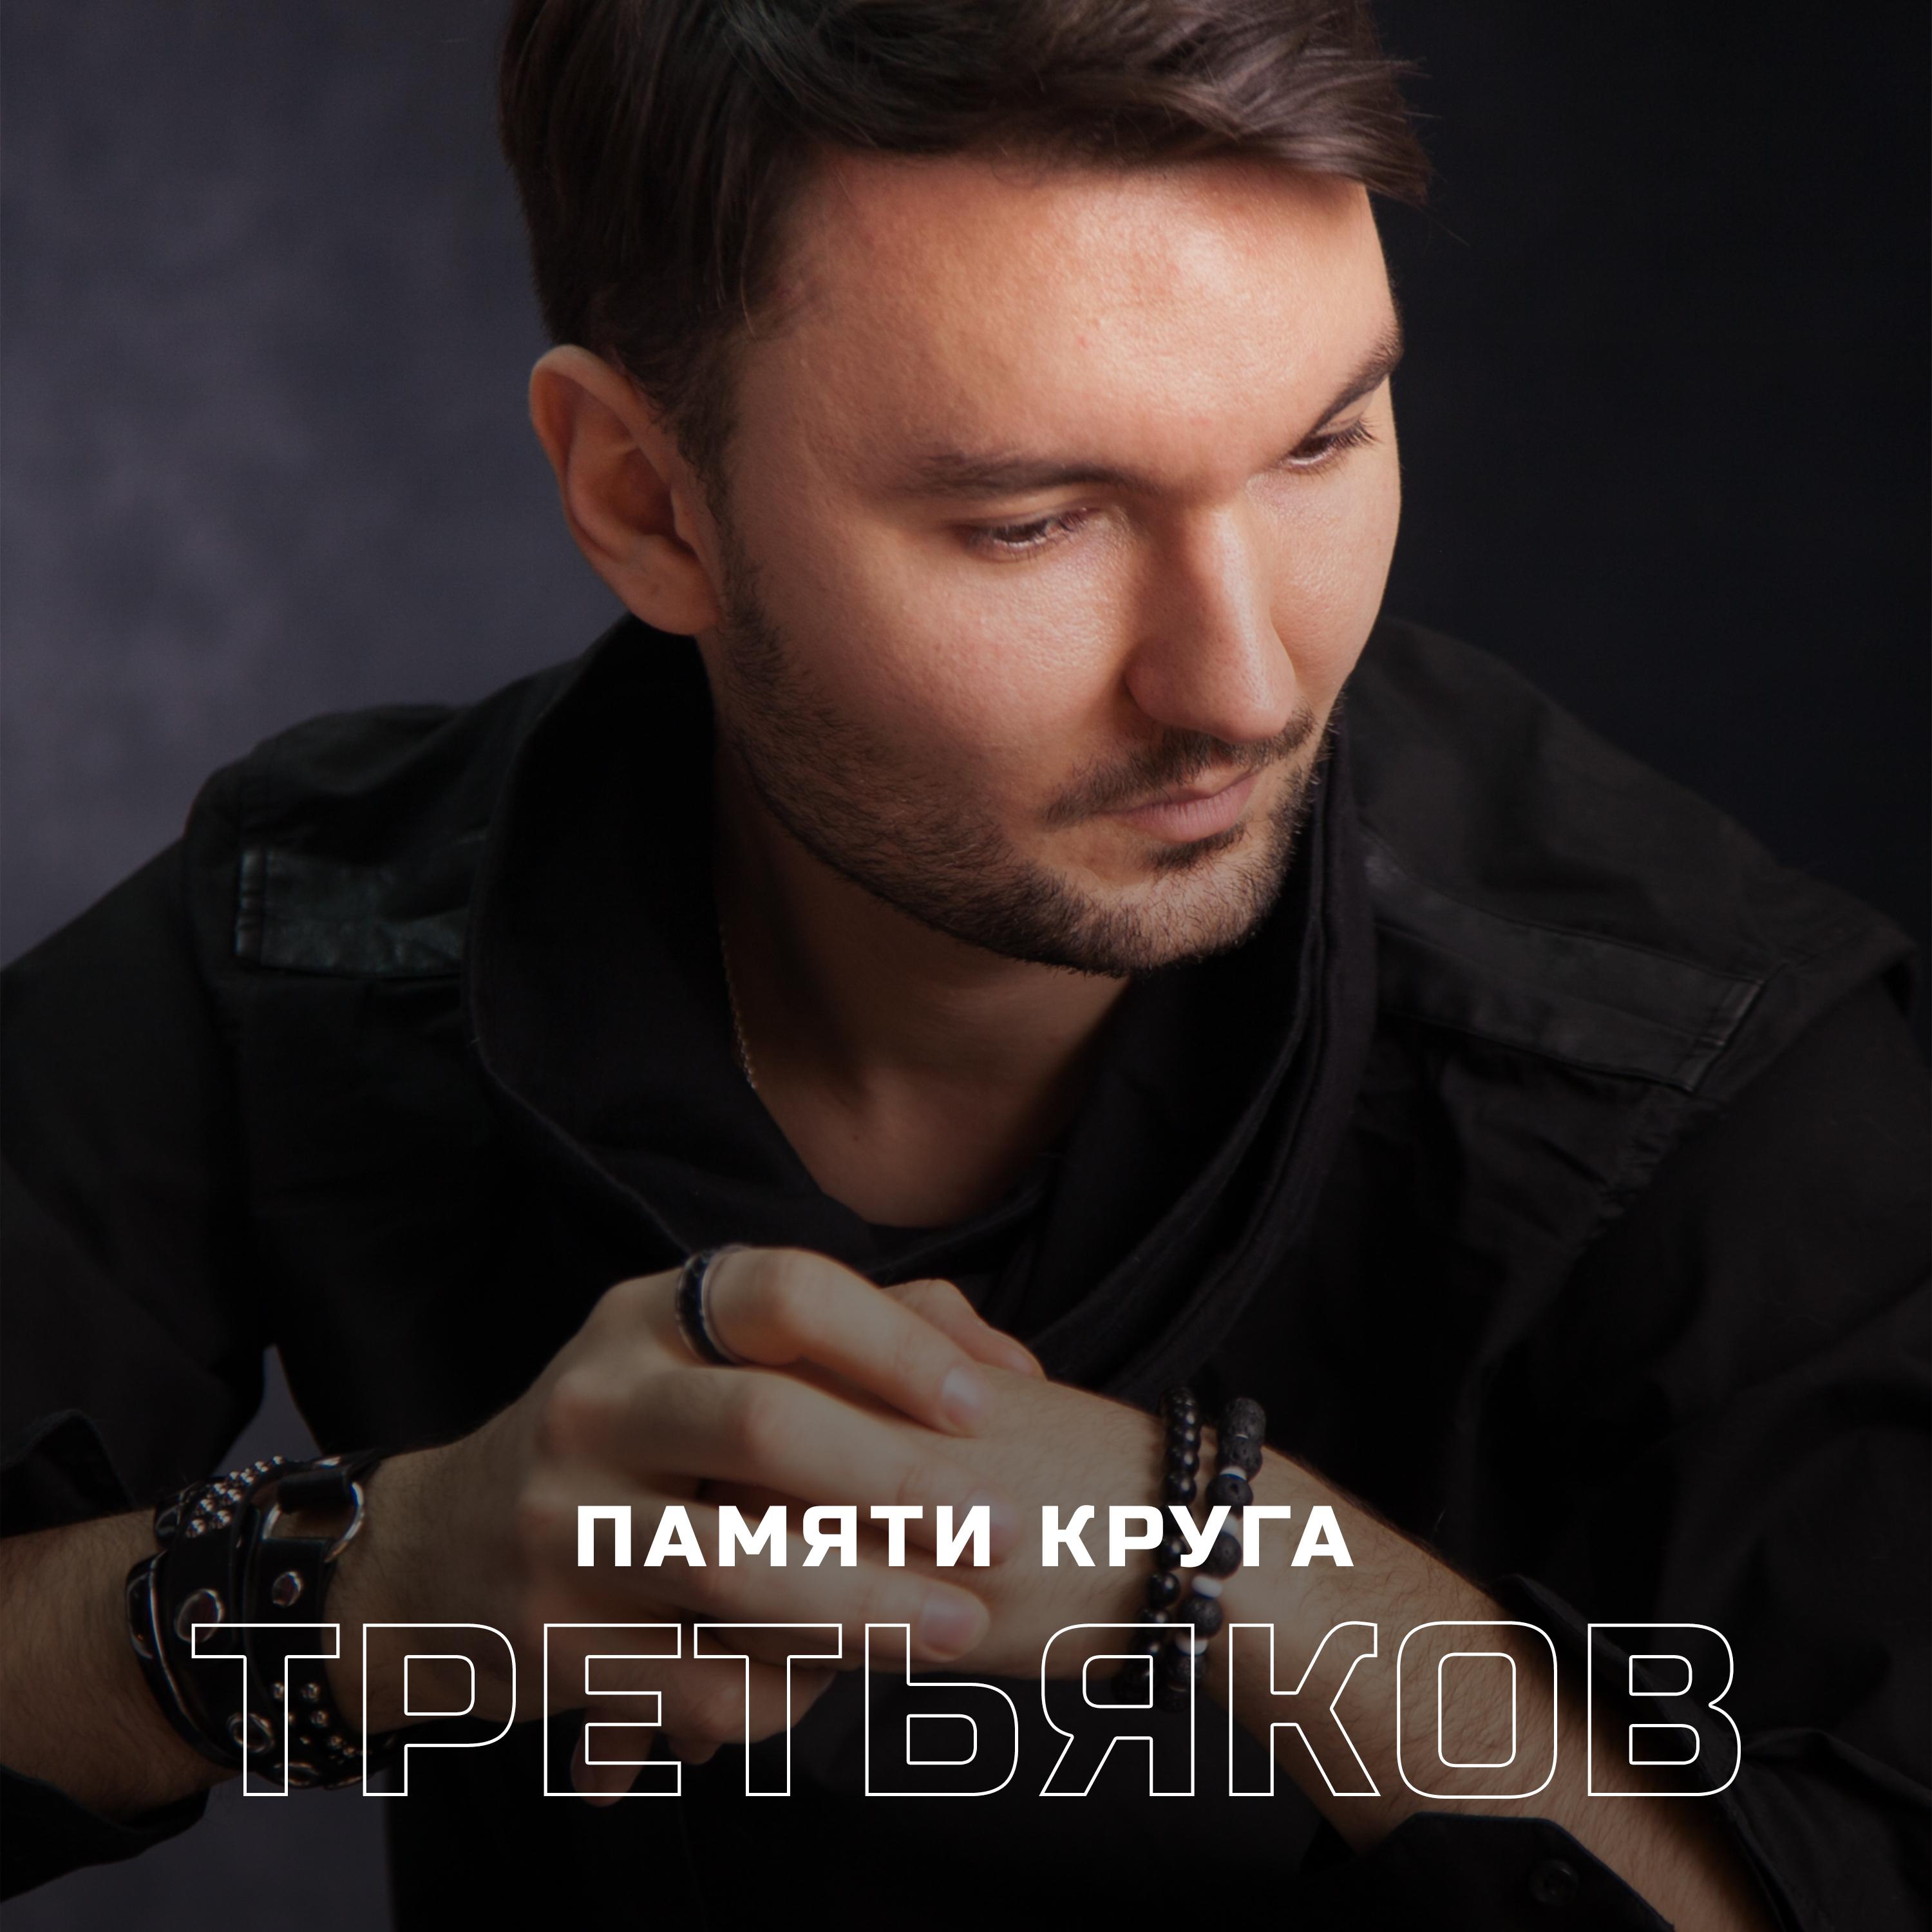 Постер альбома Памяти Михаила Круга